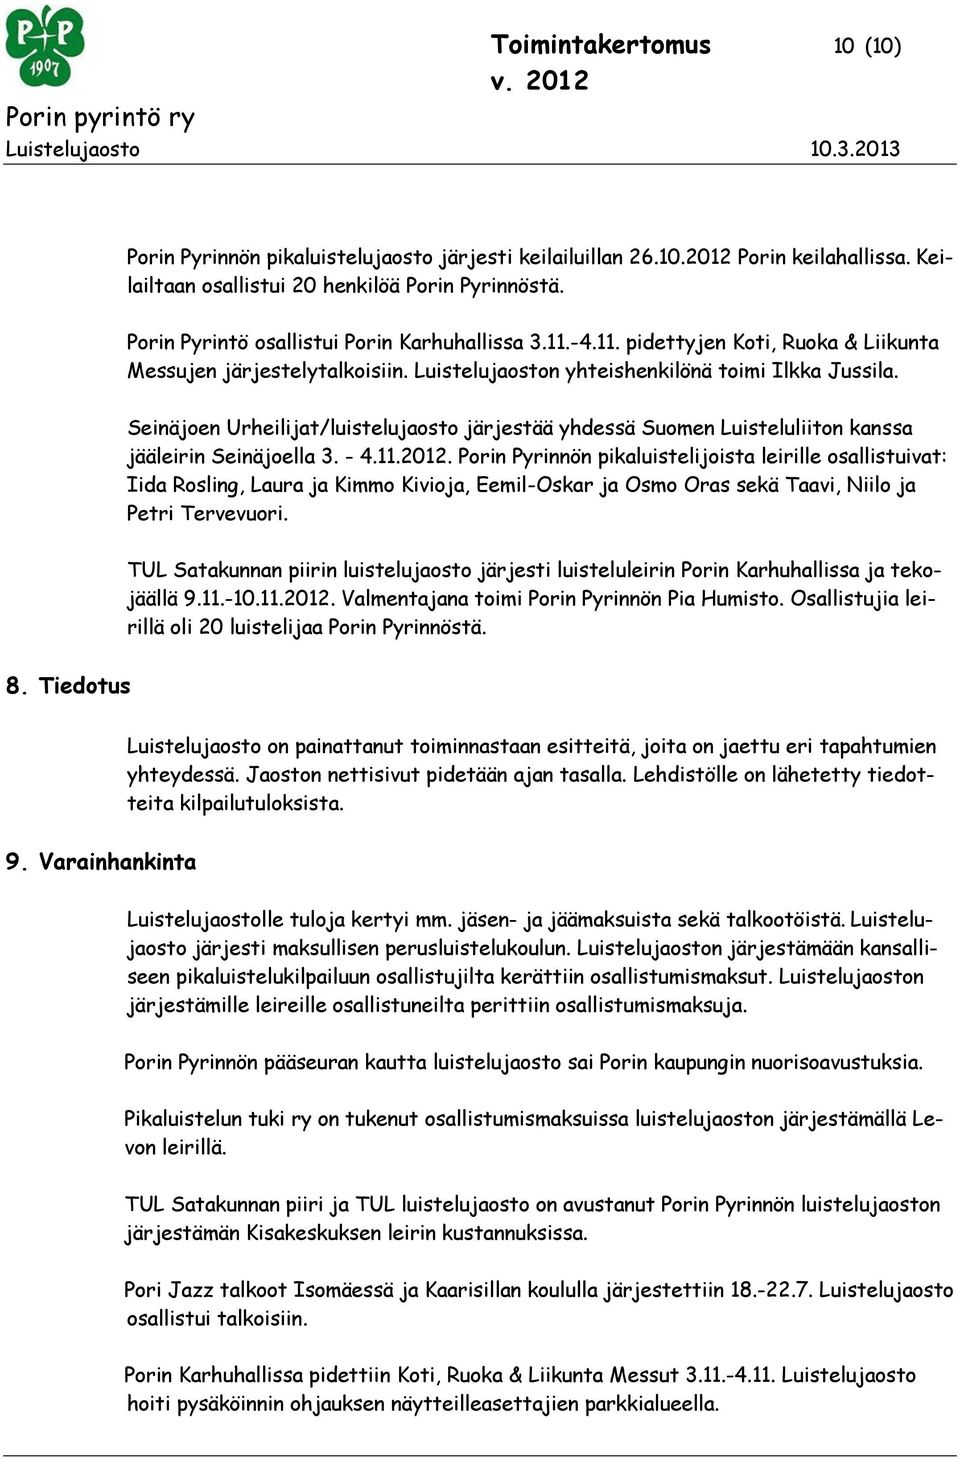 Seinäjoen Urheilijat/luistelujaosto järjestää yhdessä Suomen Luisteluliiton kanssa jääleirin Seinäjoella 3. - 4.11.2012.